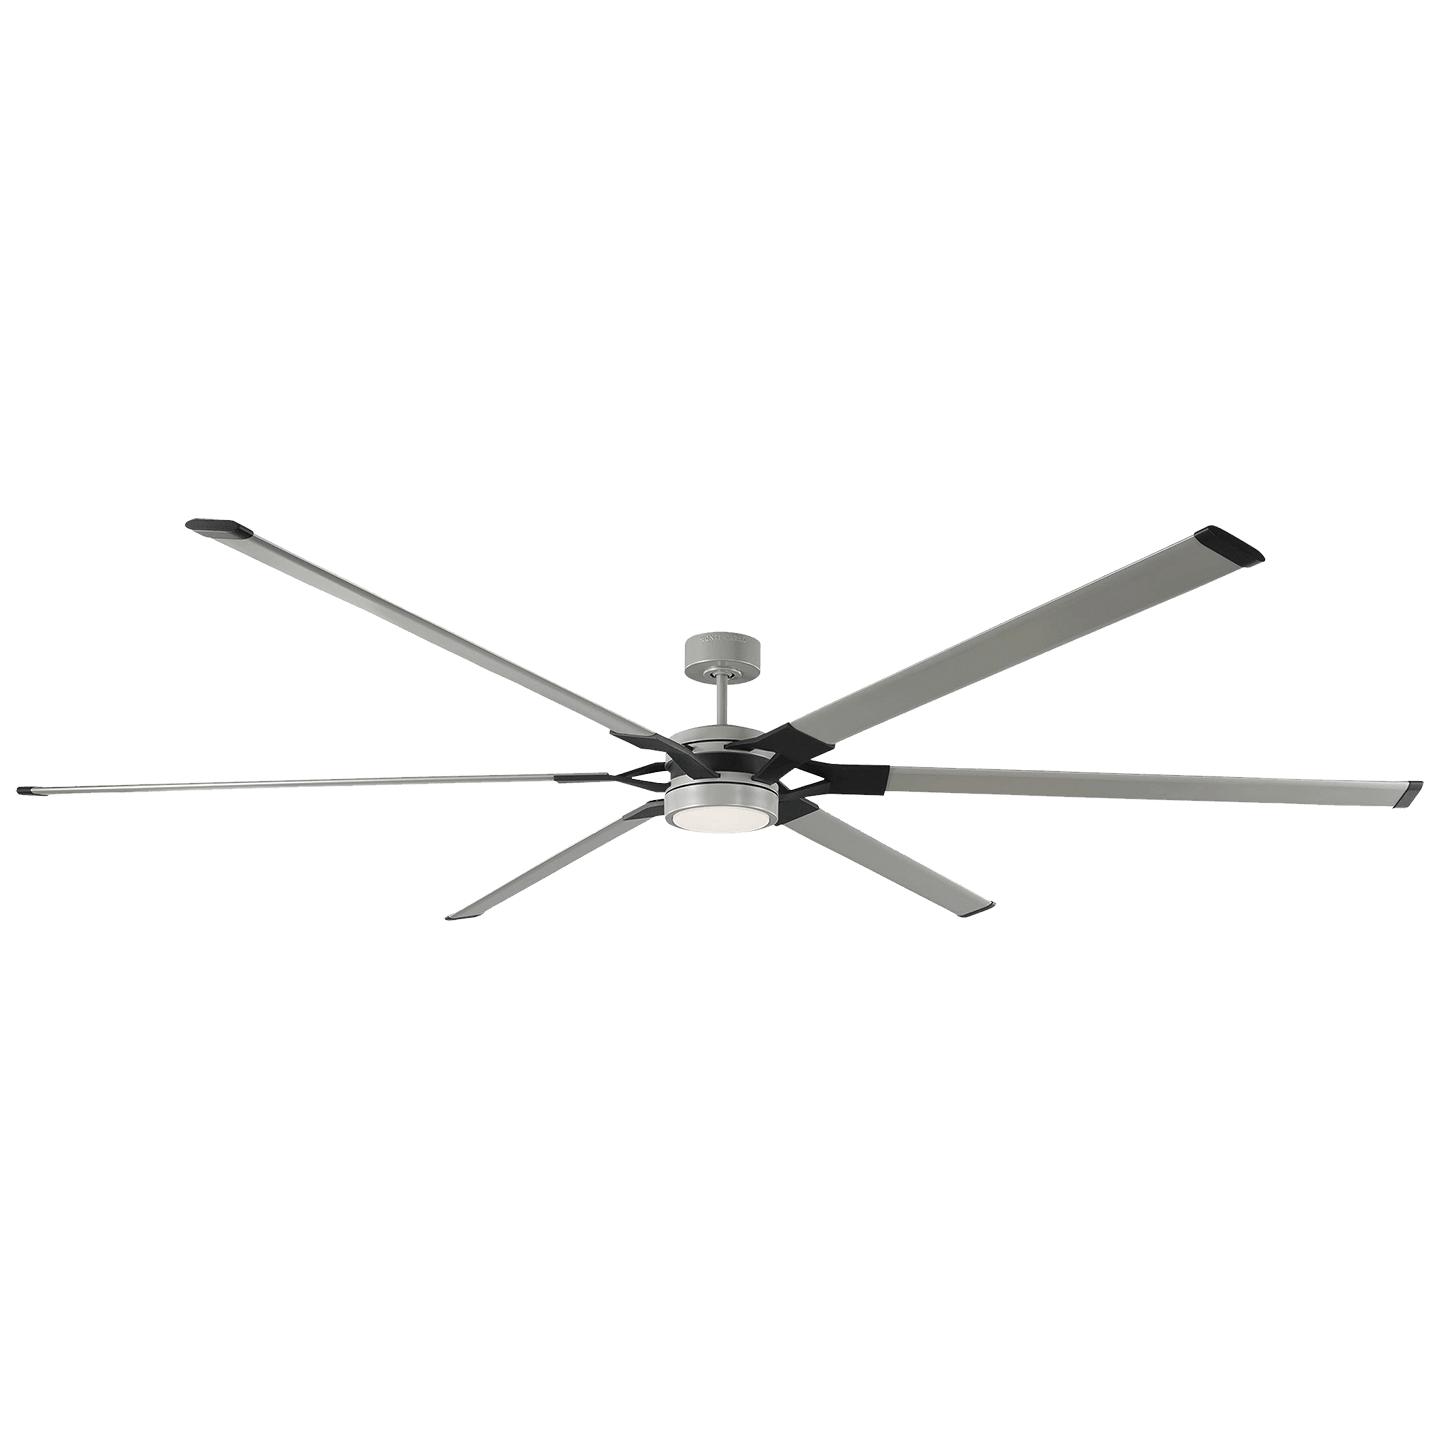 Купить Потолочный вентилятор Loft 96" Ceiling Fan в интернет-магазине roooms.ru